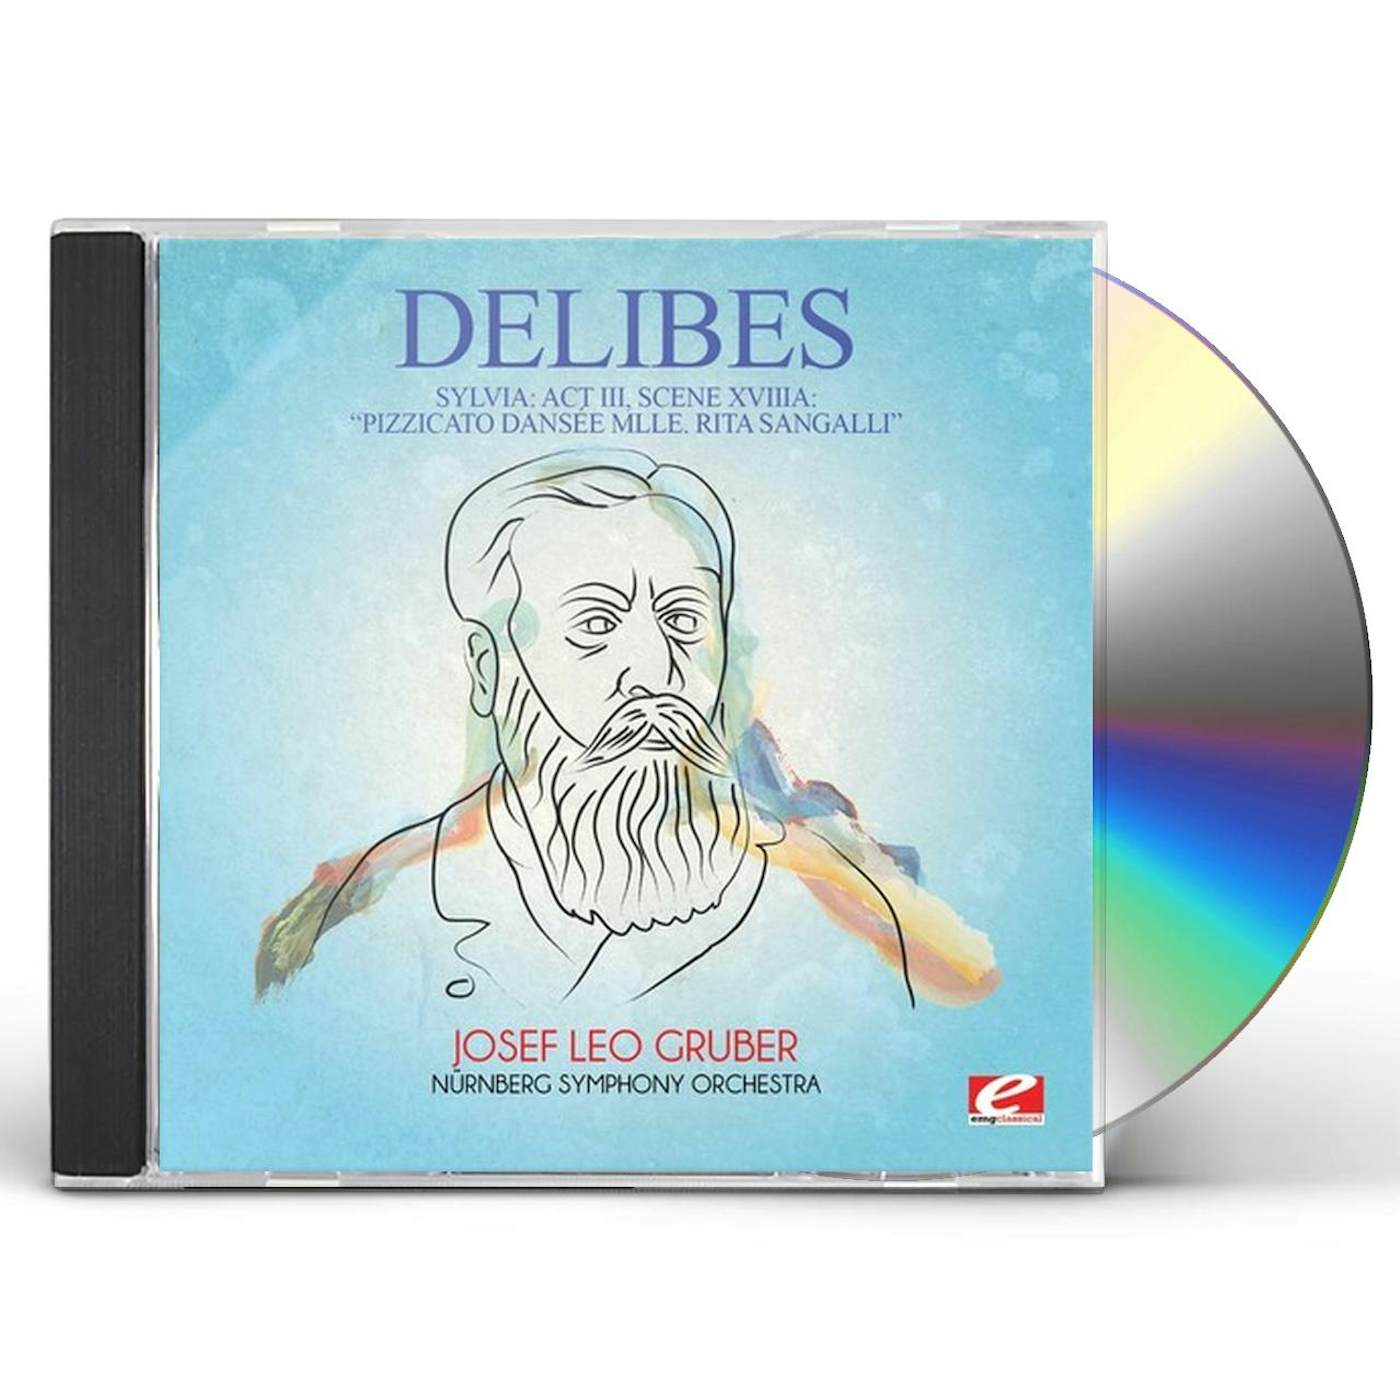 Delibes SYLVIA: ACT III SCENE XVIIIA / PIZZICATO DANSE CD